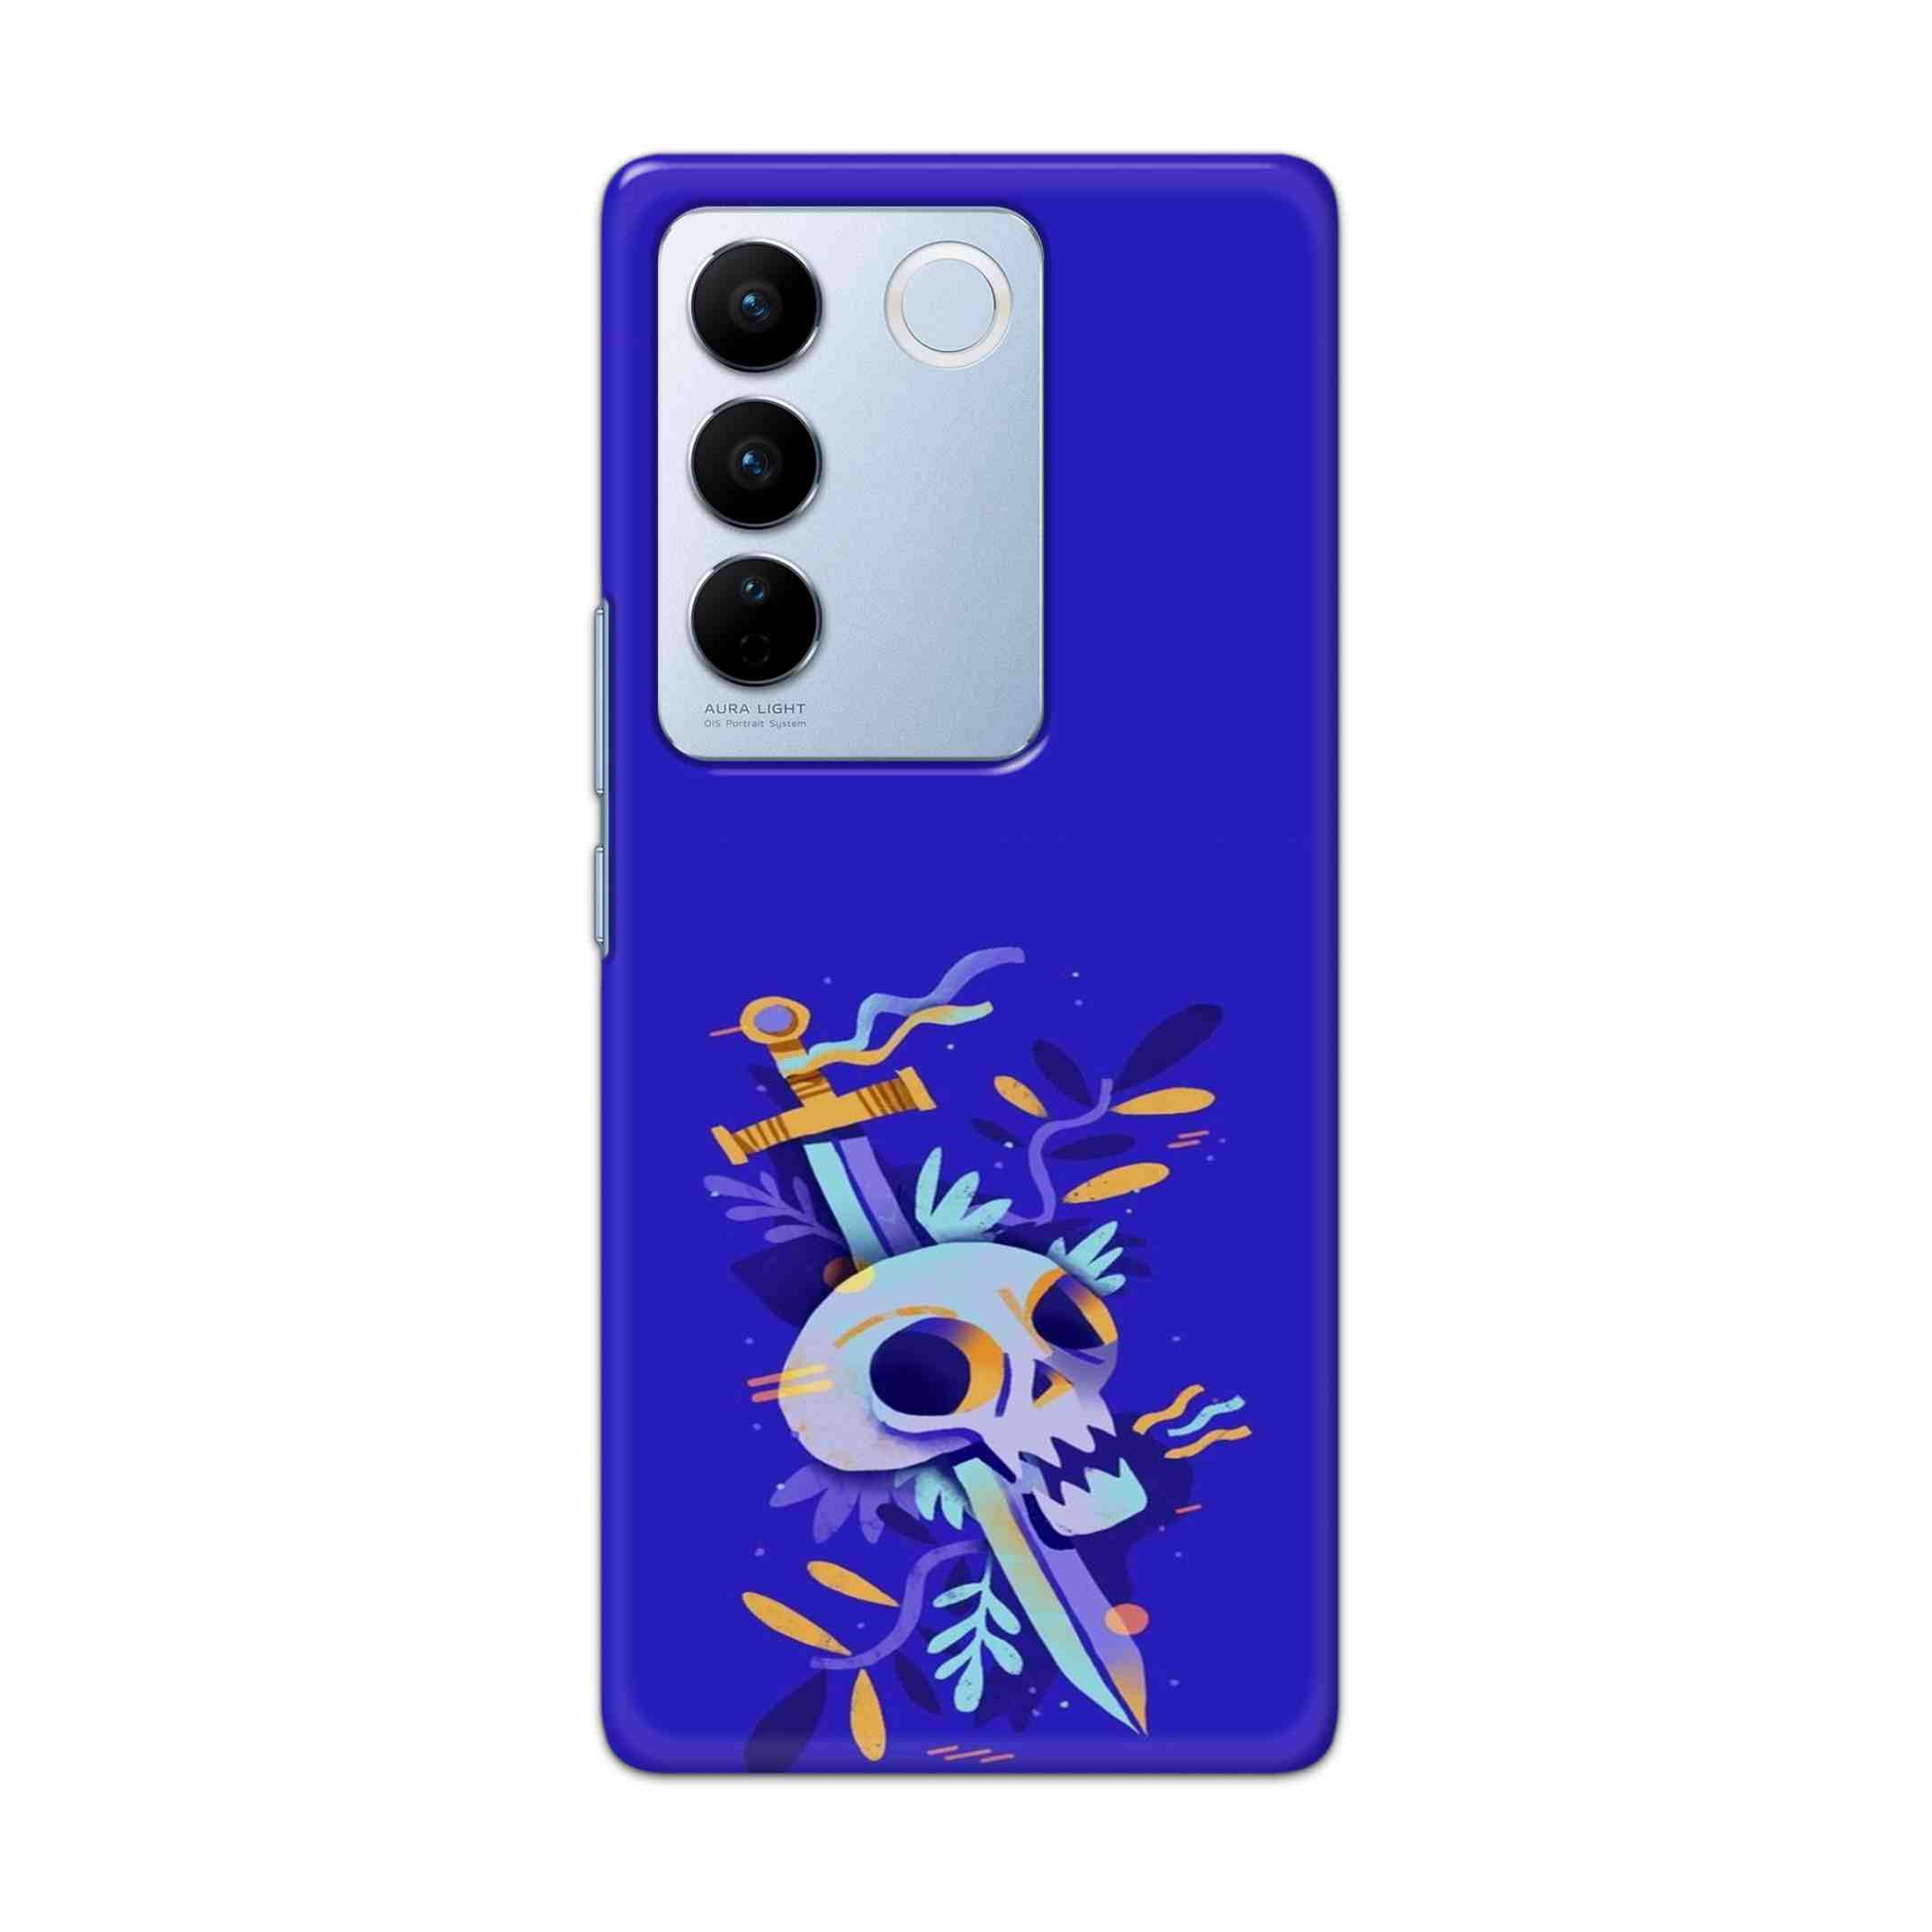 Buy Blue Skull Hard Back Mobile Phone Case Cover For Vivo V27 Online